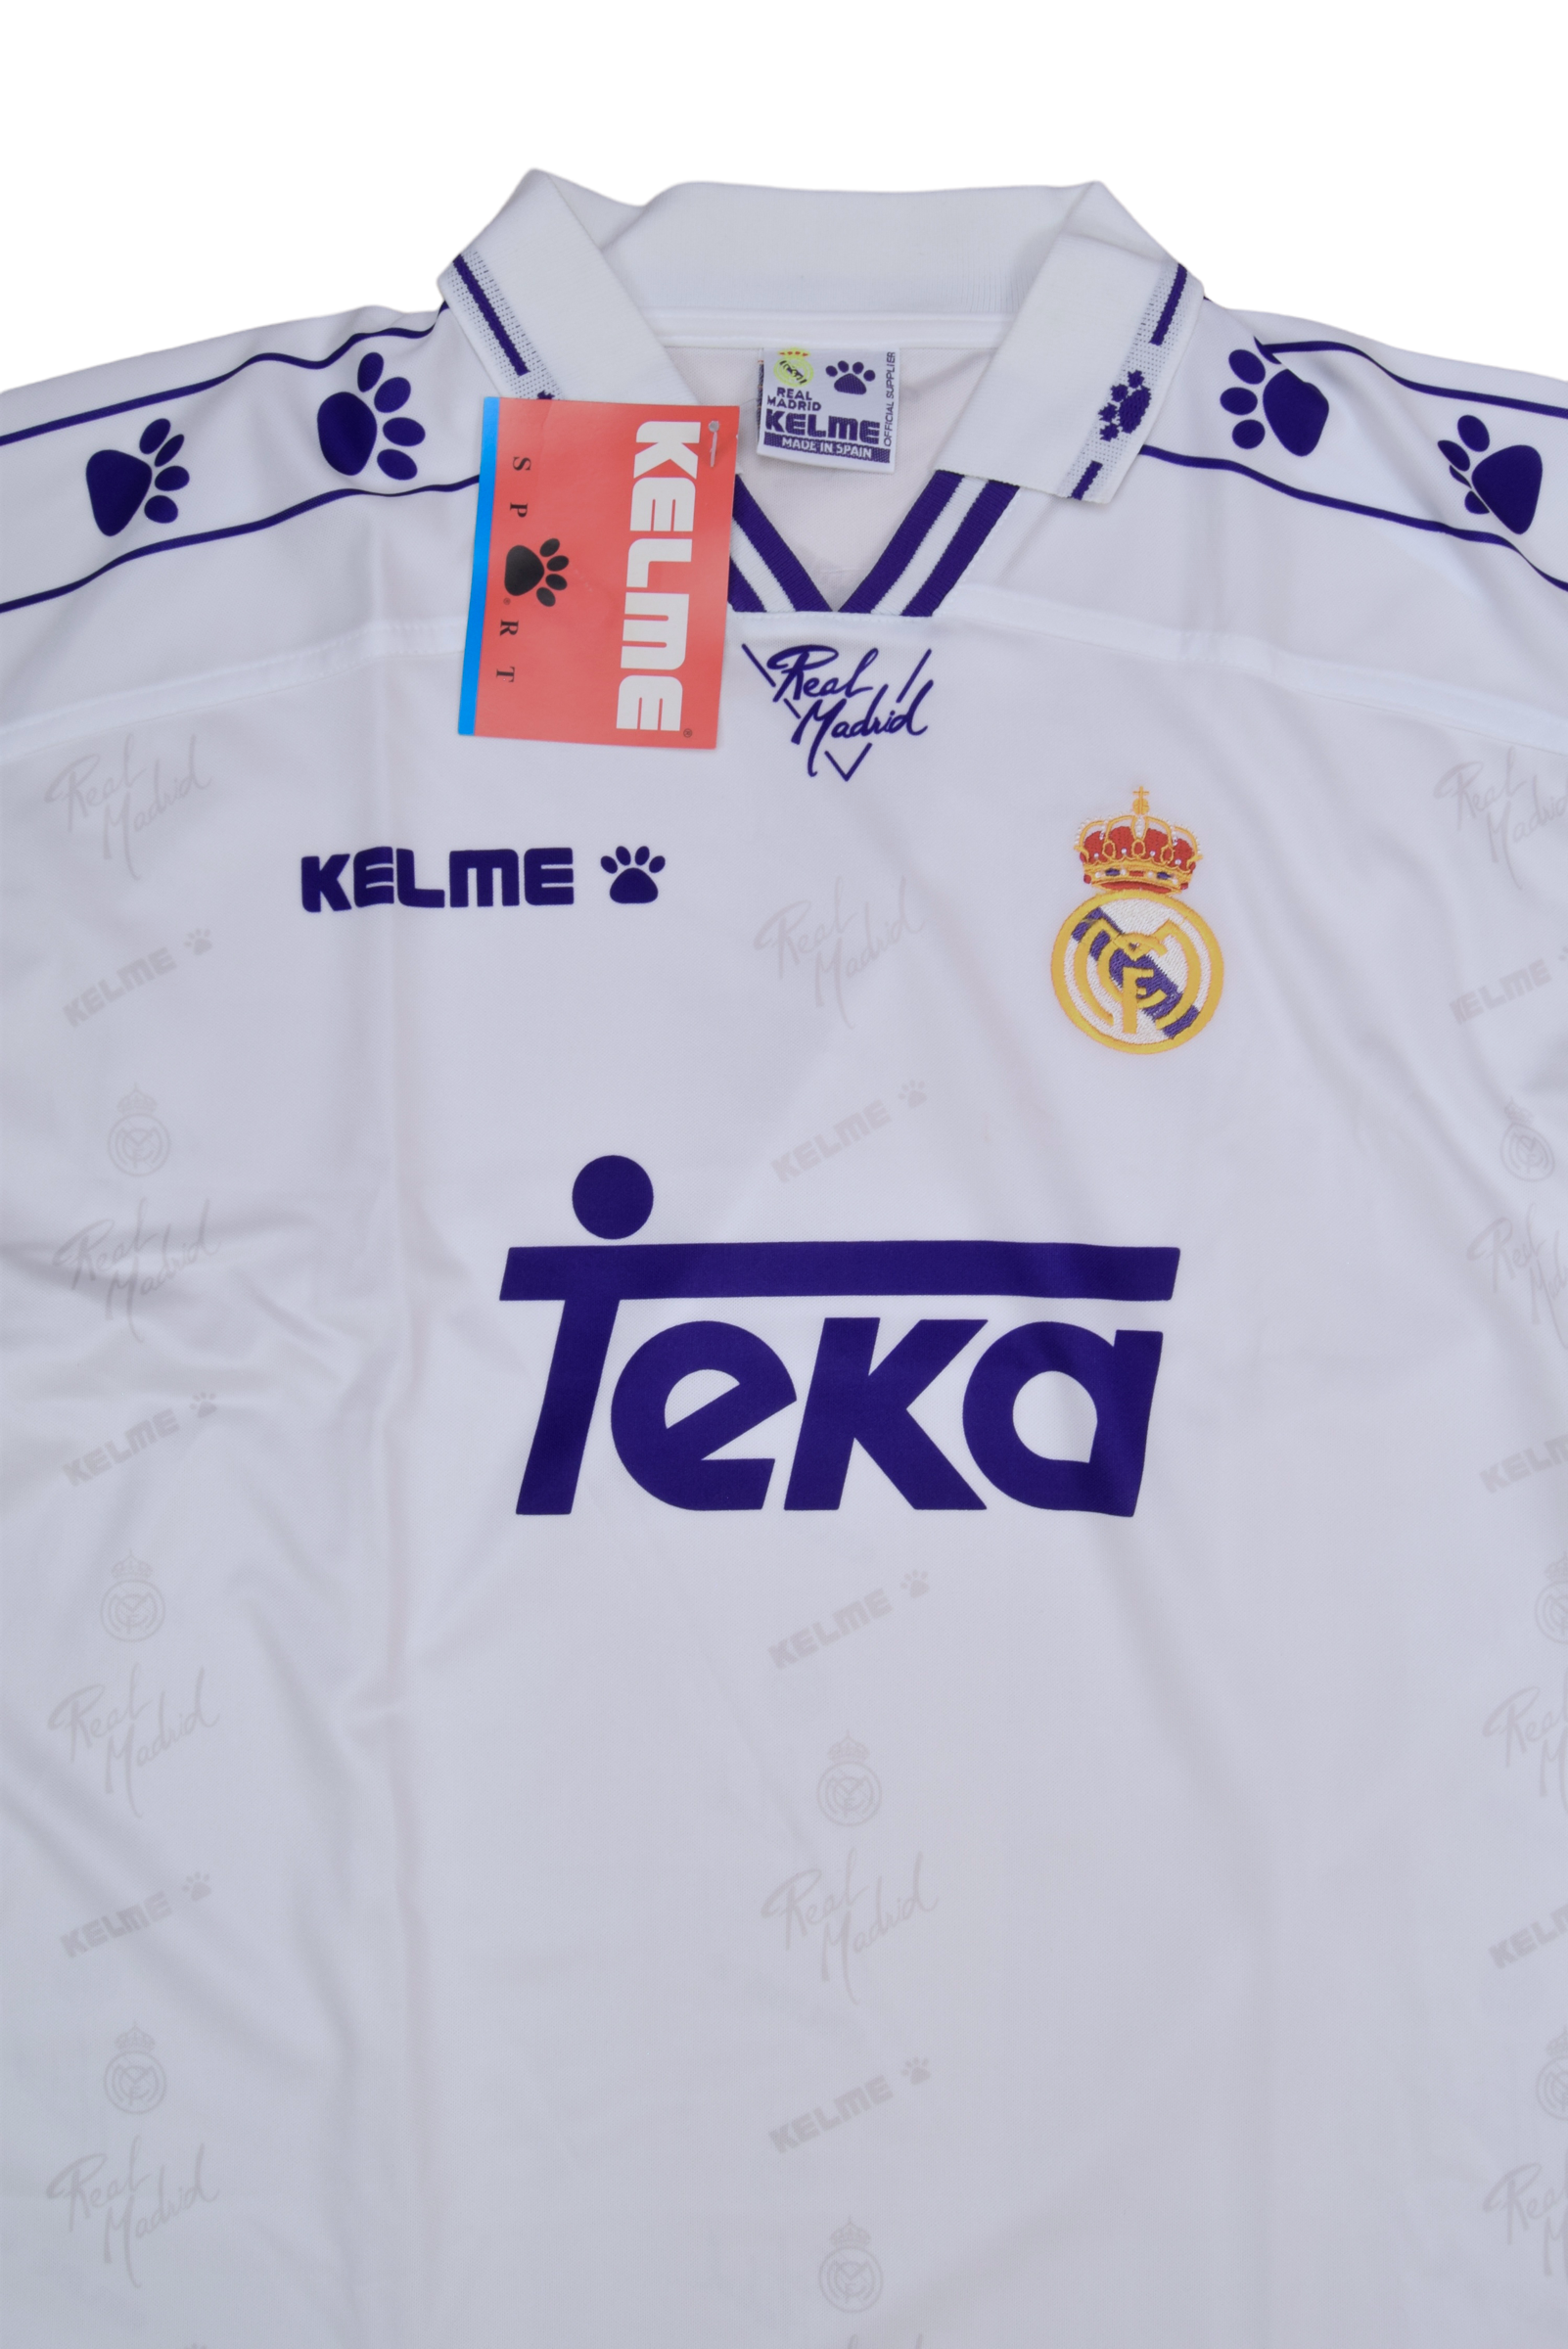 Vintage Real Madrid Kelme Home Football Shirt 1994 - 1995 Home White Teka BNWT NOS OG DS New Size L